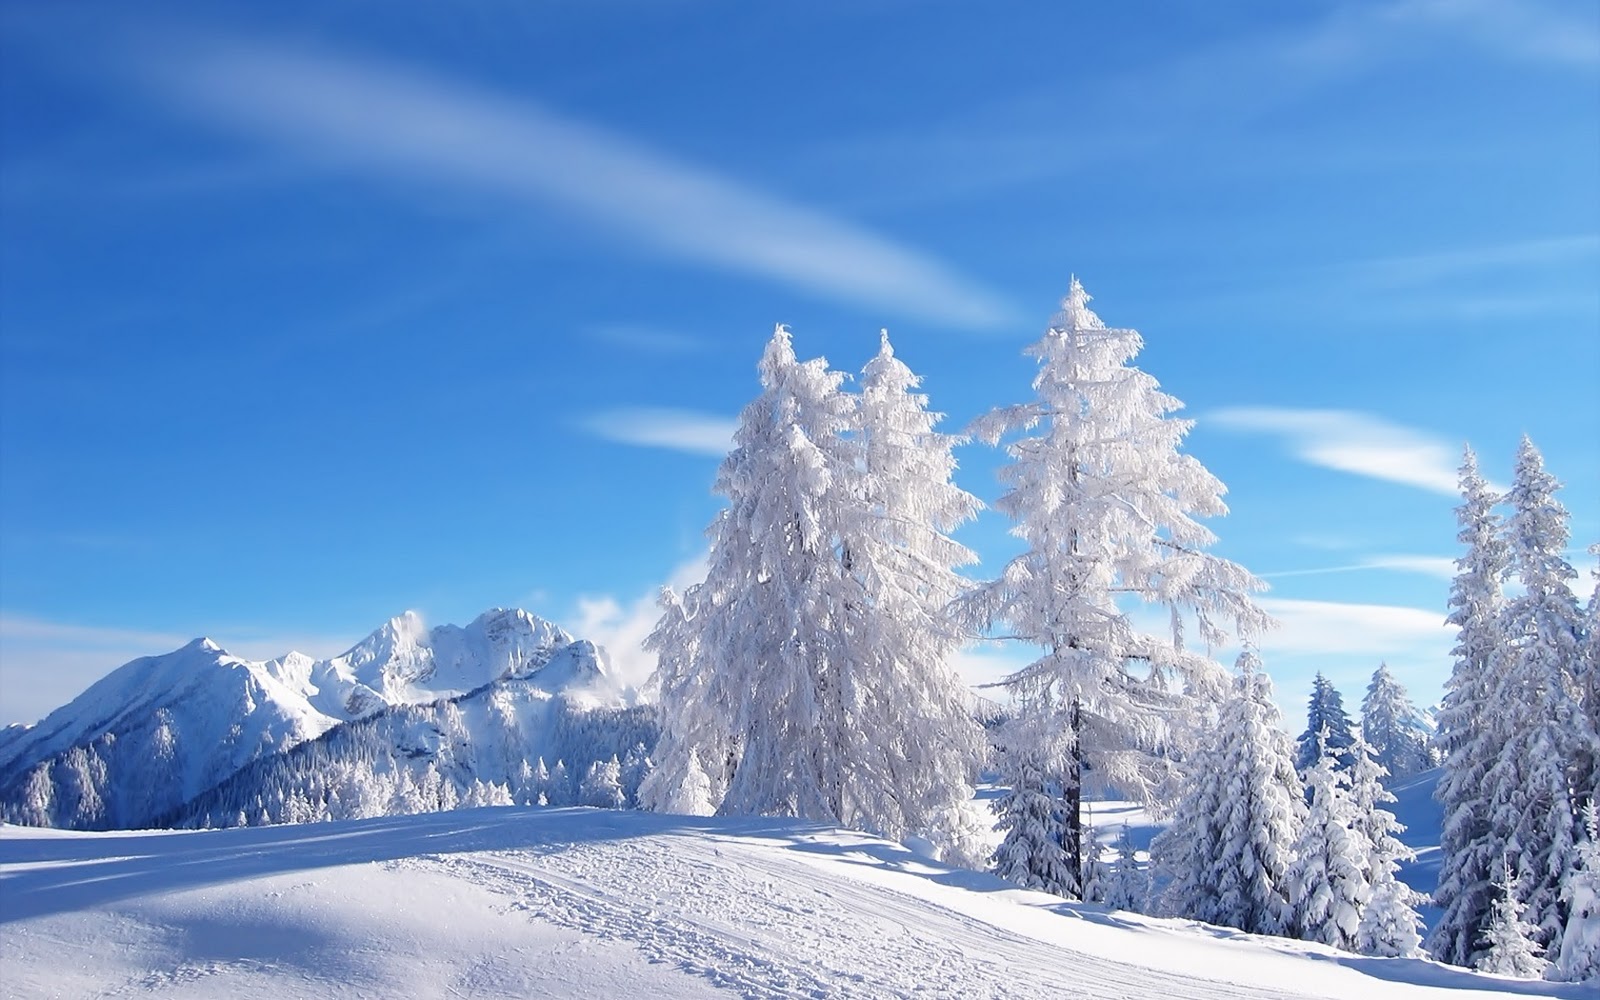 Winter achtergronden winter wallpapers winter landschappen 23jpg 1600x1000